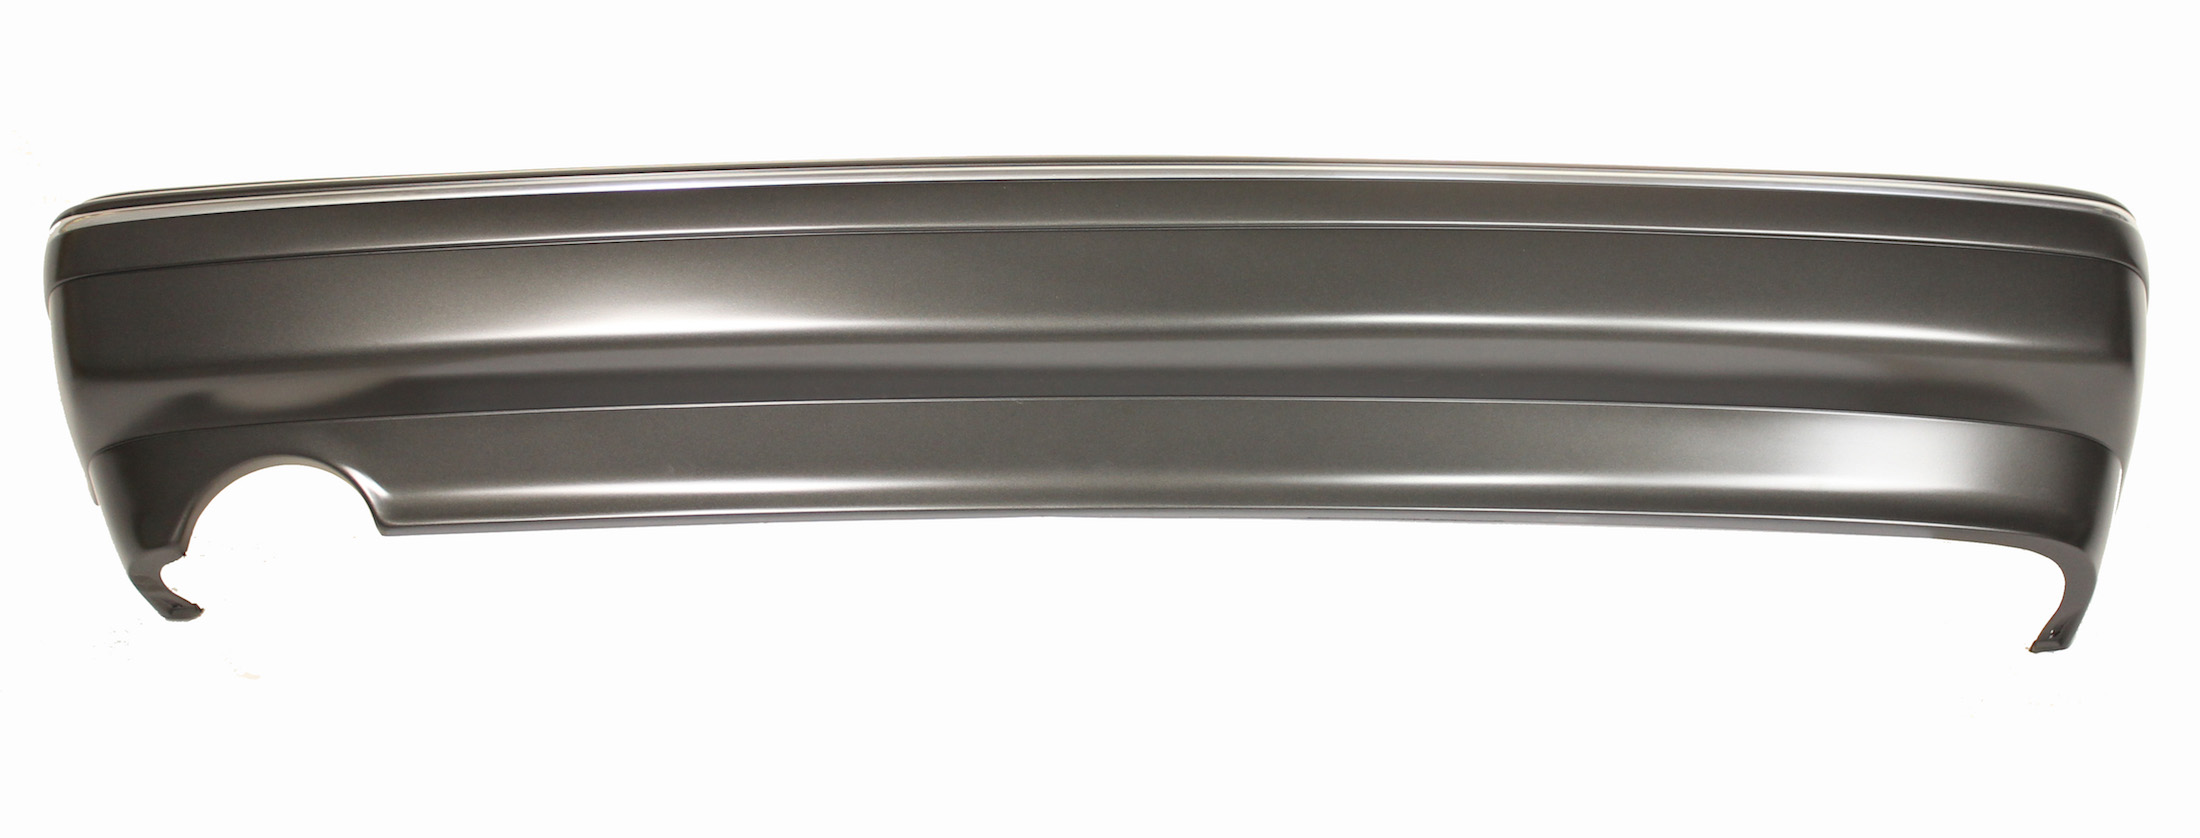 Rear Bumper Cover (Grey) - 9000 CS 1990-98